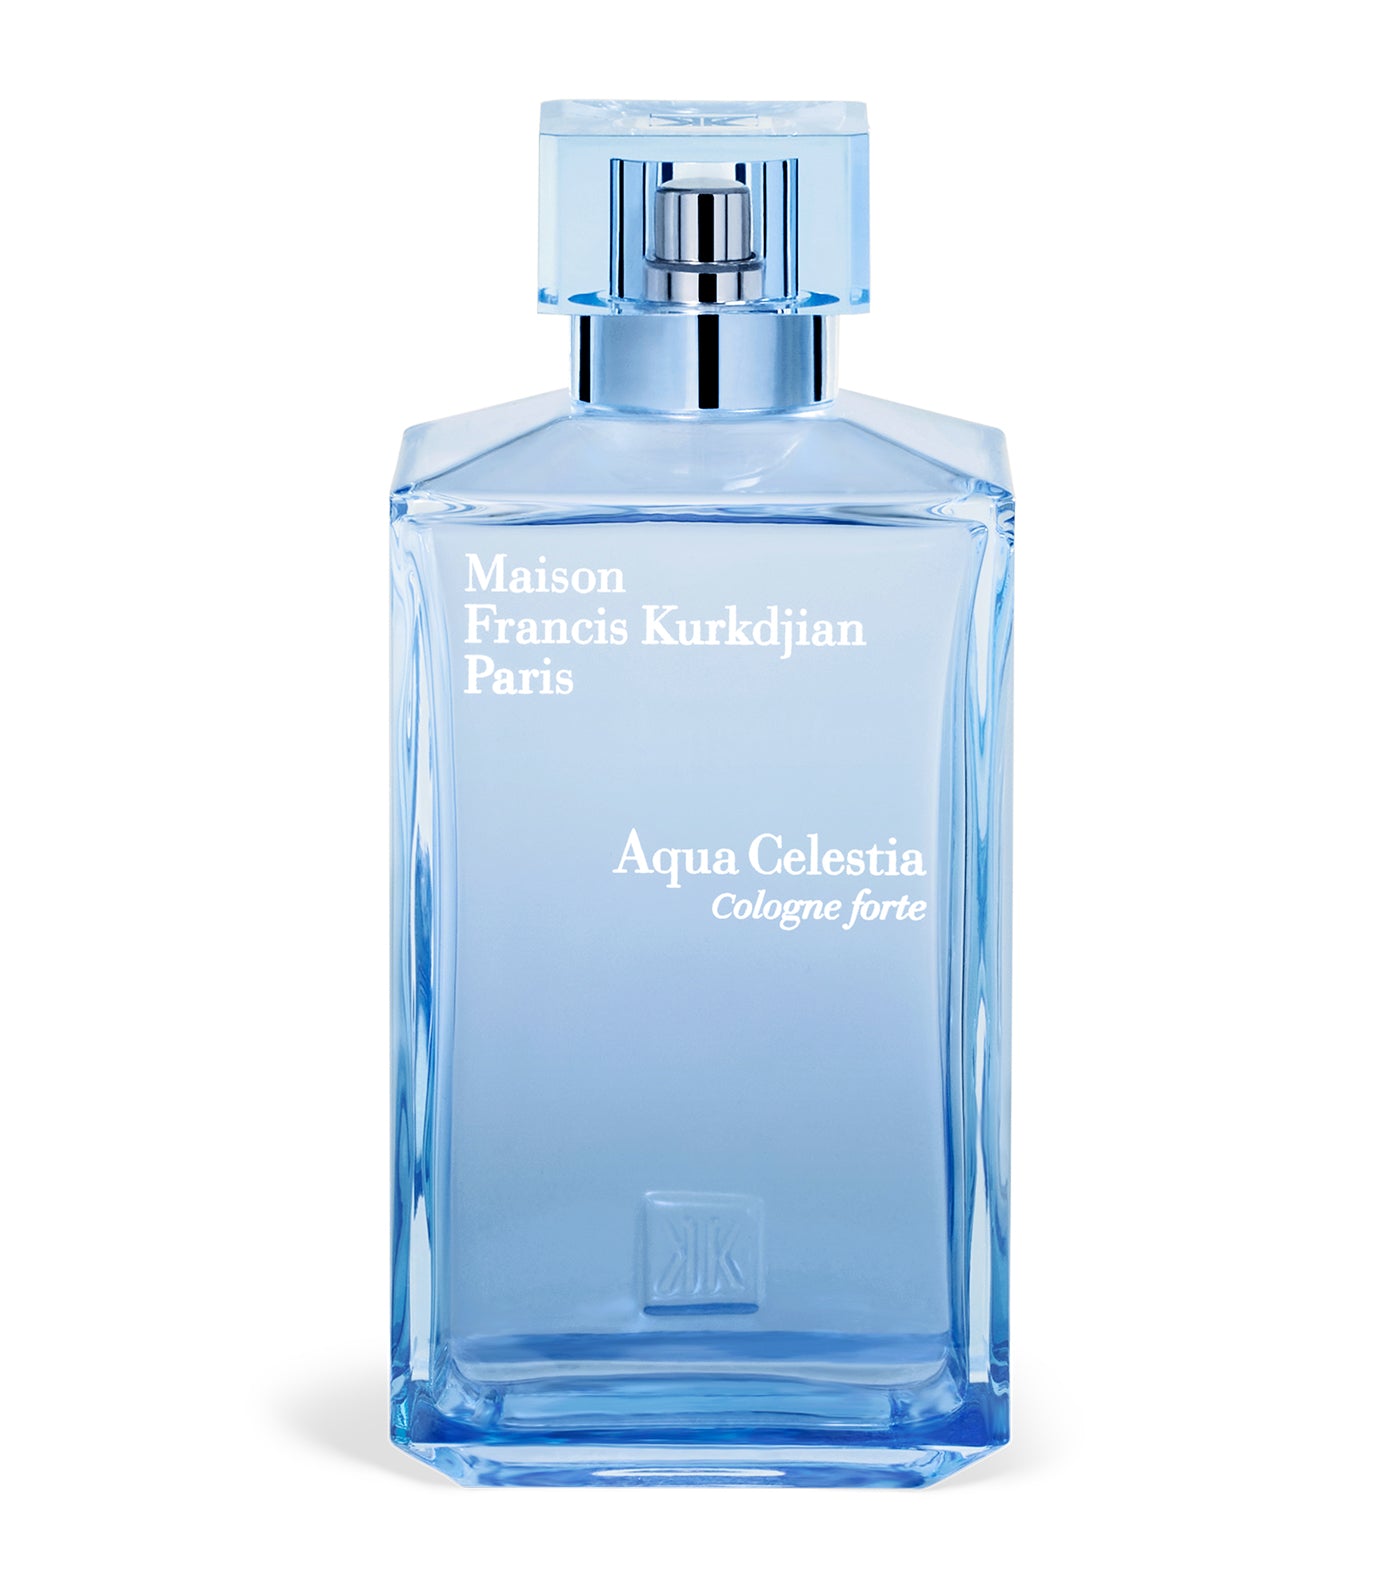 Aqua Celestia Cologne forte Eau de Parfum